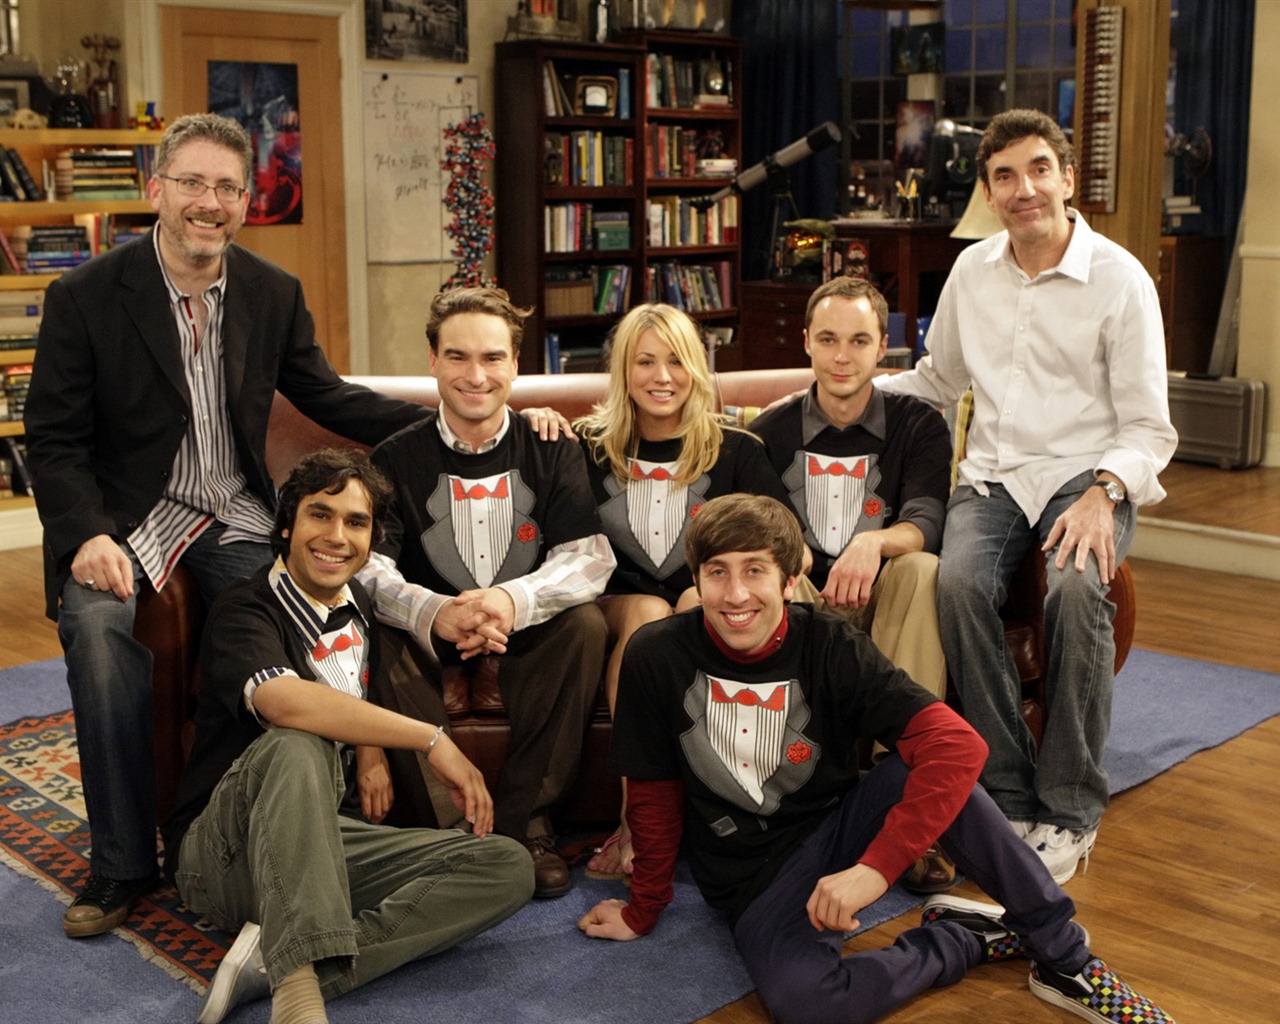 The Big Bang Theory 生活大爆炸 电视剧高清壁纸20 - 1280x1024